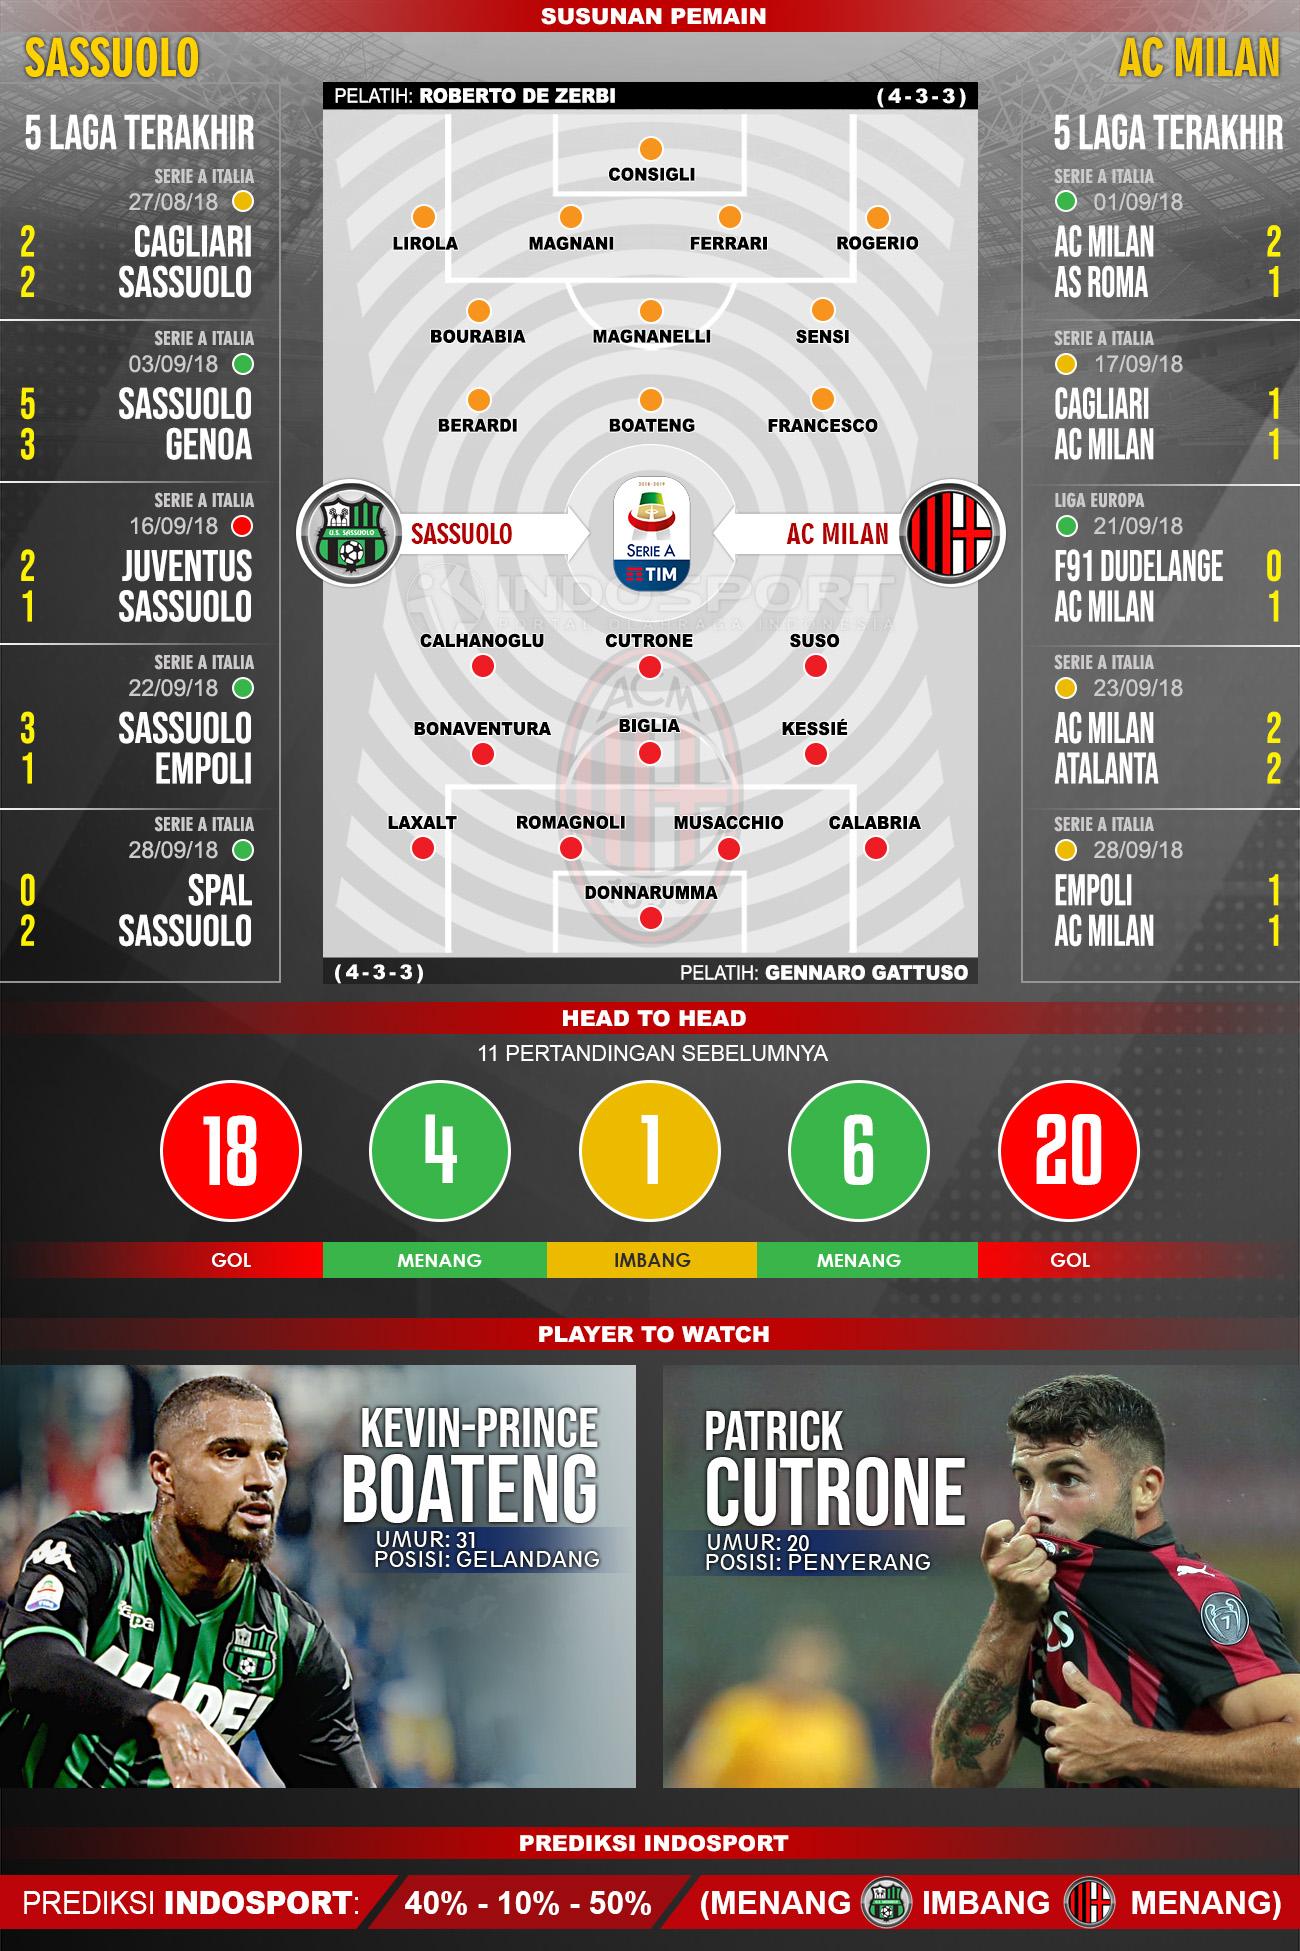 Sassuolo vs AC Milan (Susunan Pemain - Lima Laga Terakhir - Player to Watch - Prediksi Indosport) Copyright: Indosport.com